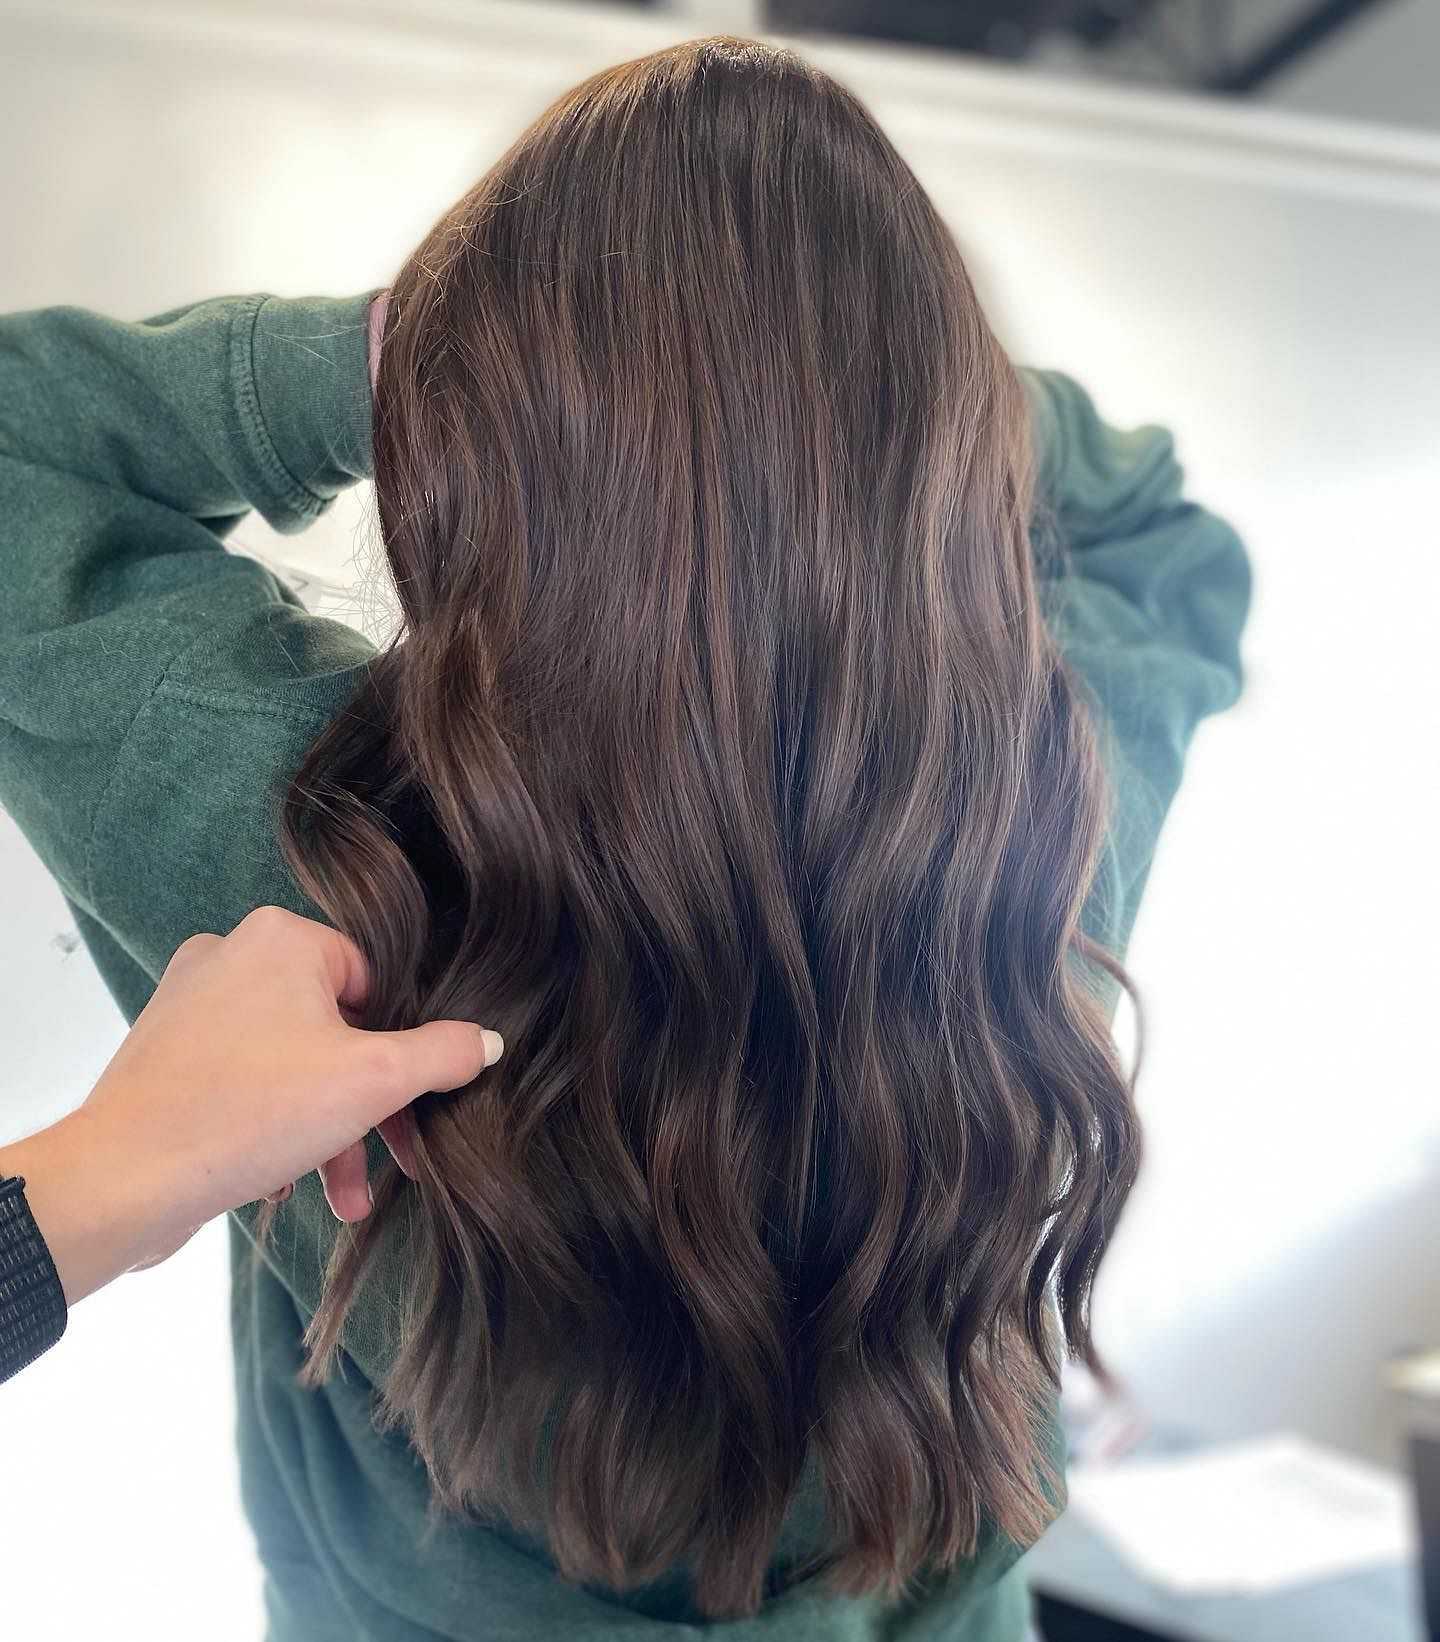 Person showcasing their long, wavy brown hair.